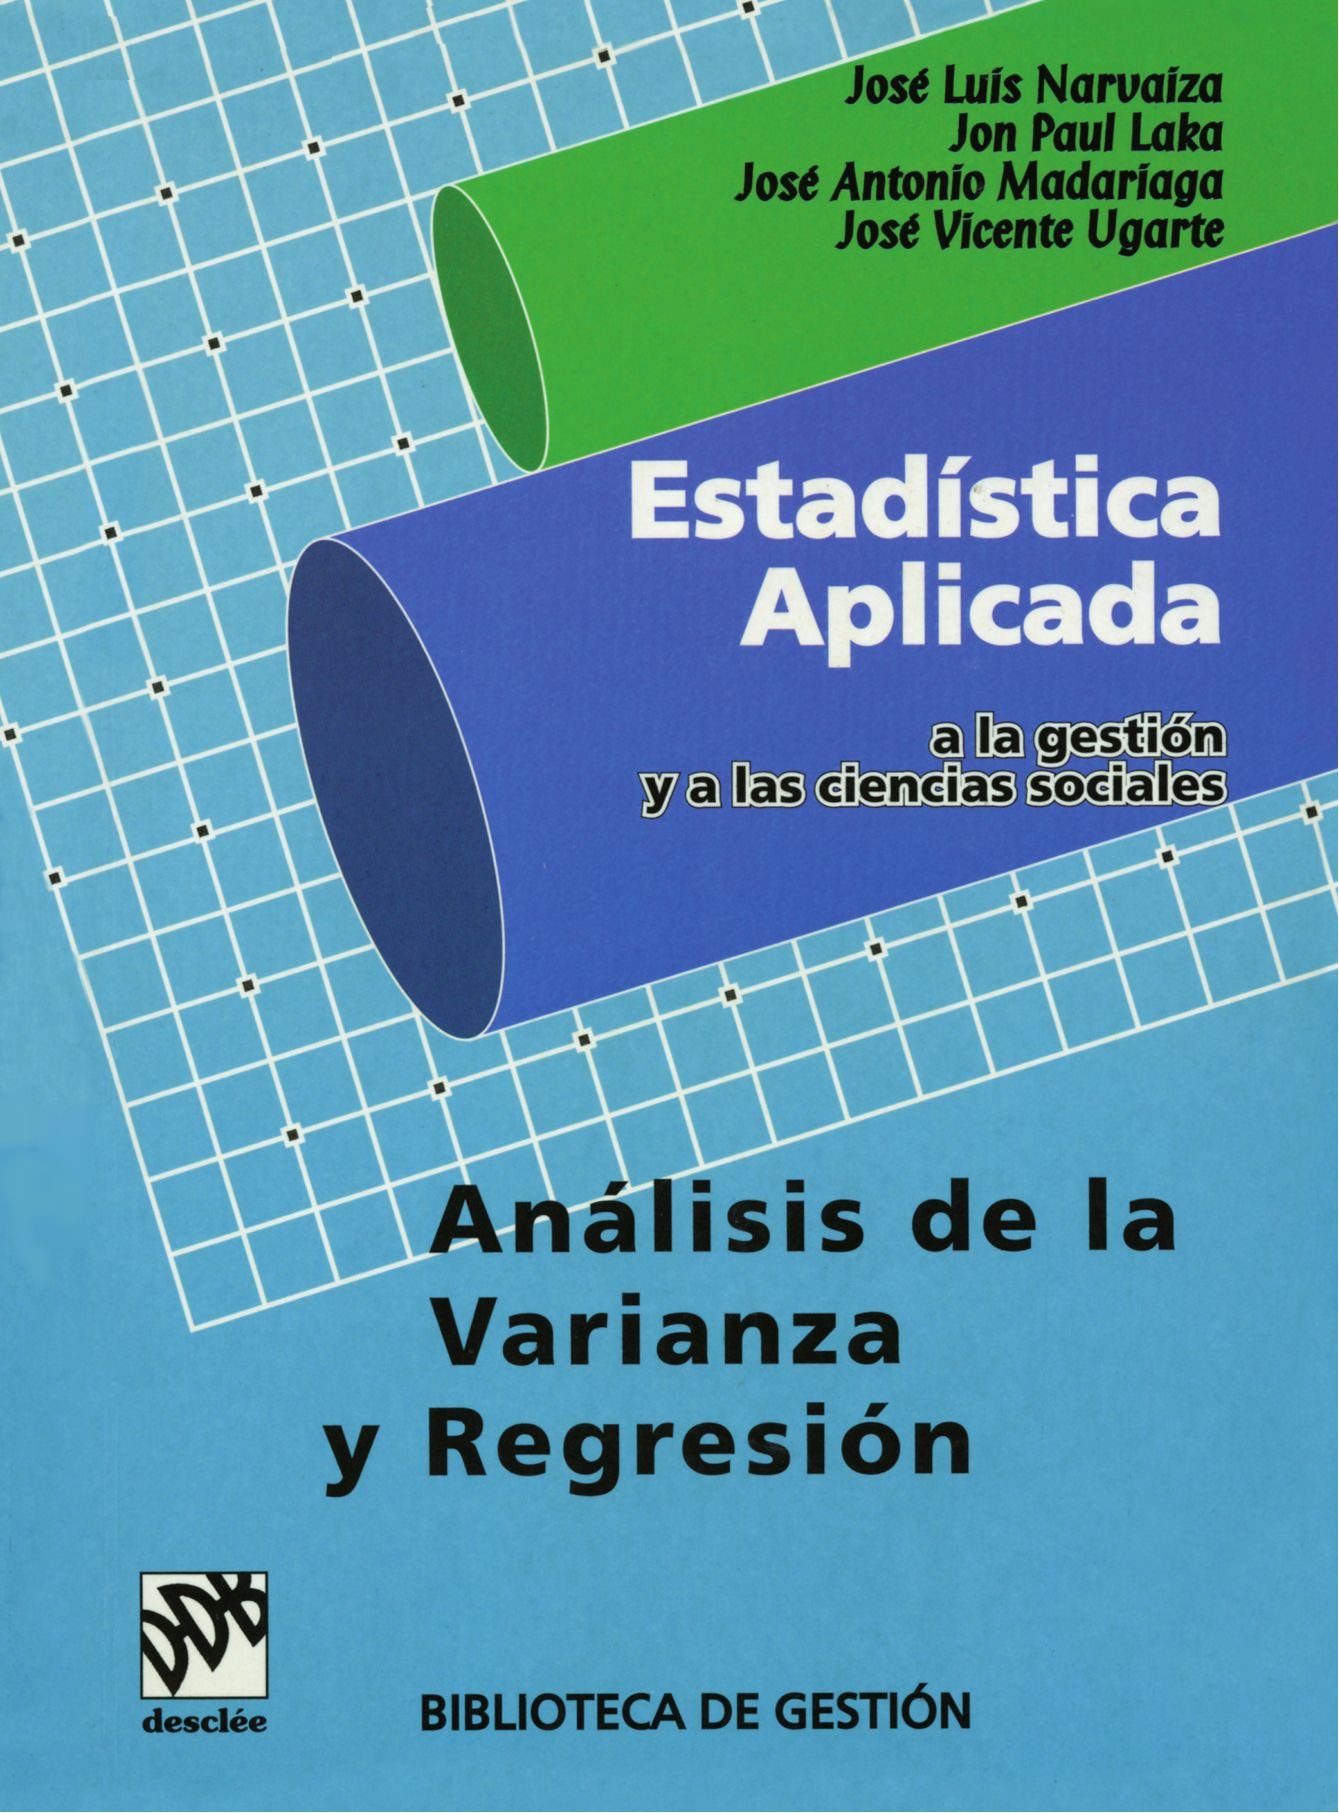 Imagen de portada del libro Estadística aplicada a la gestión (III). Análisis de la varianza y regresión